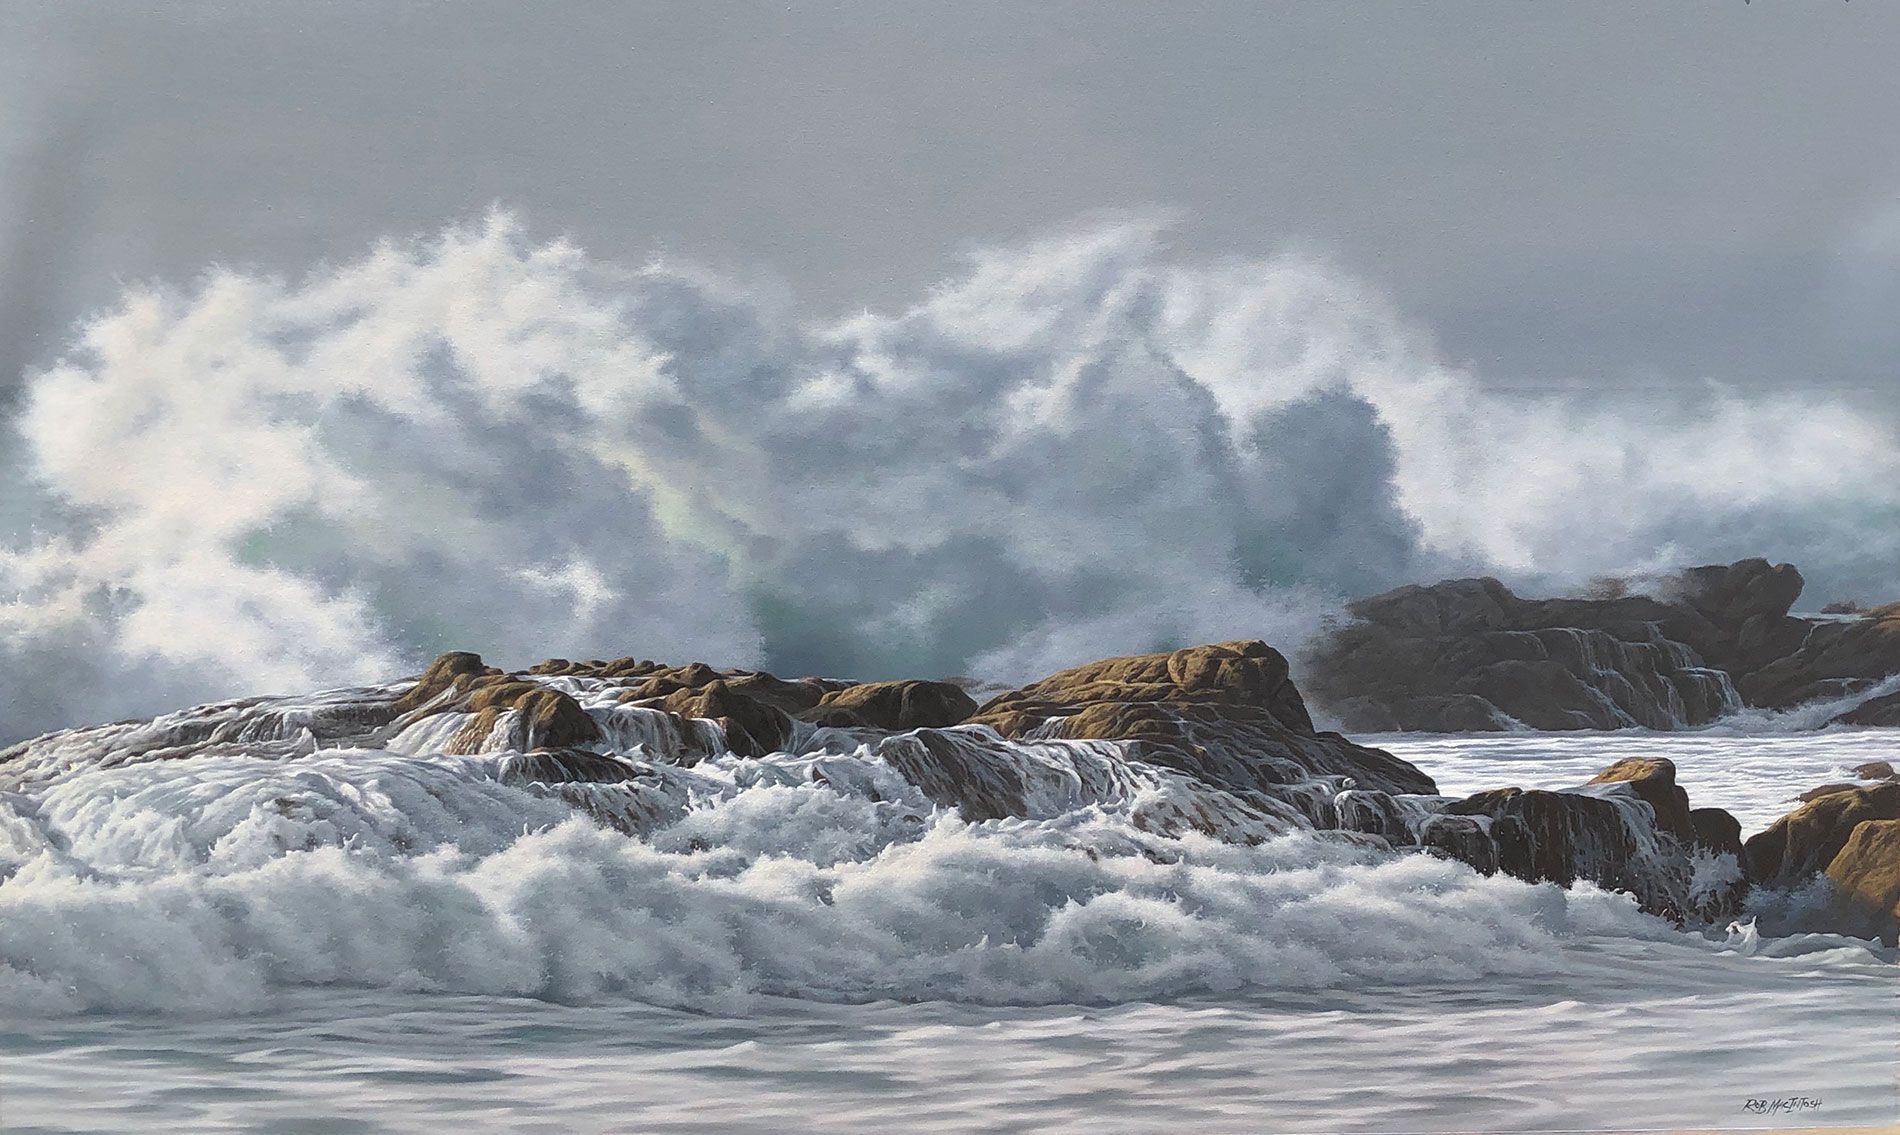 Photorealistic painting of waves crashing against rocks